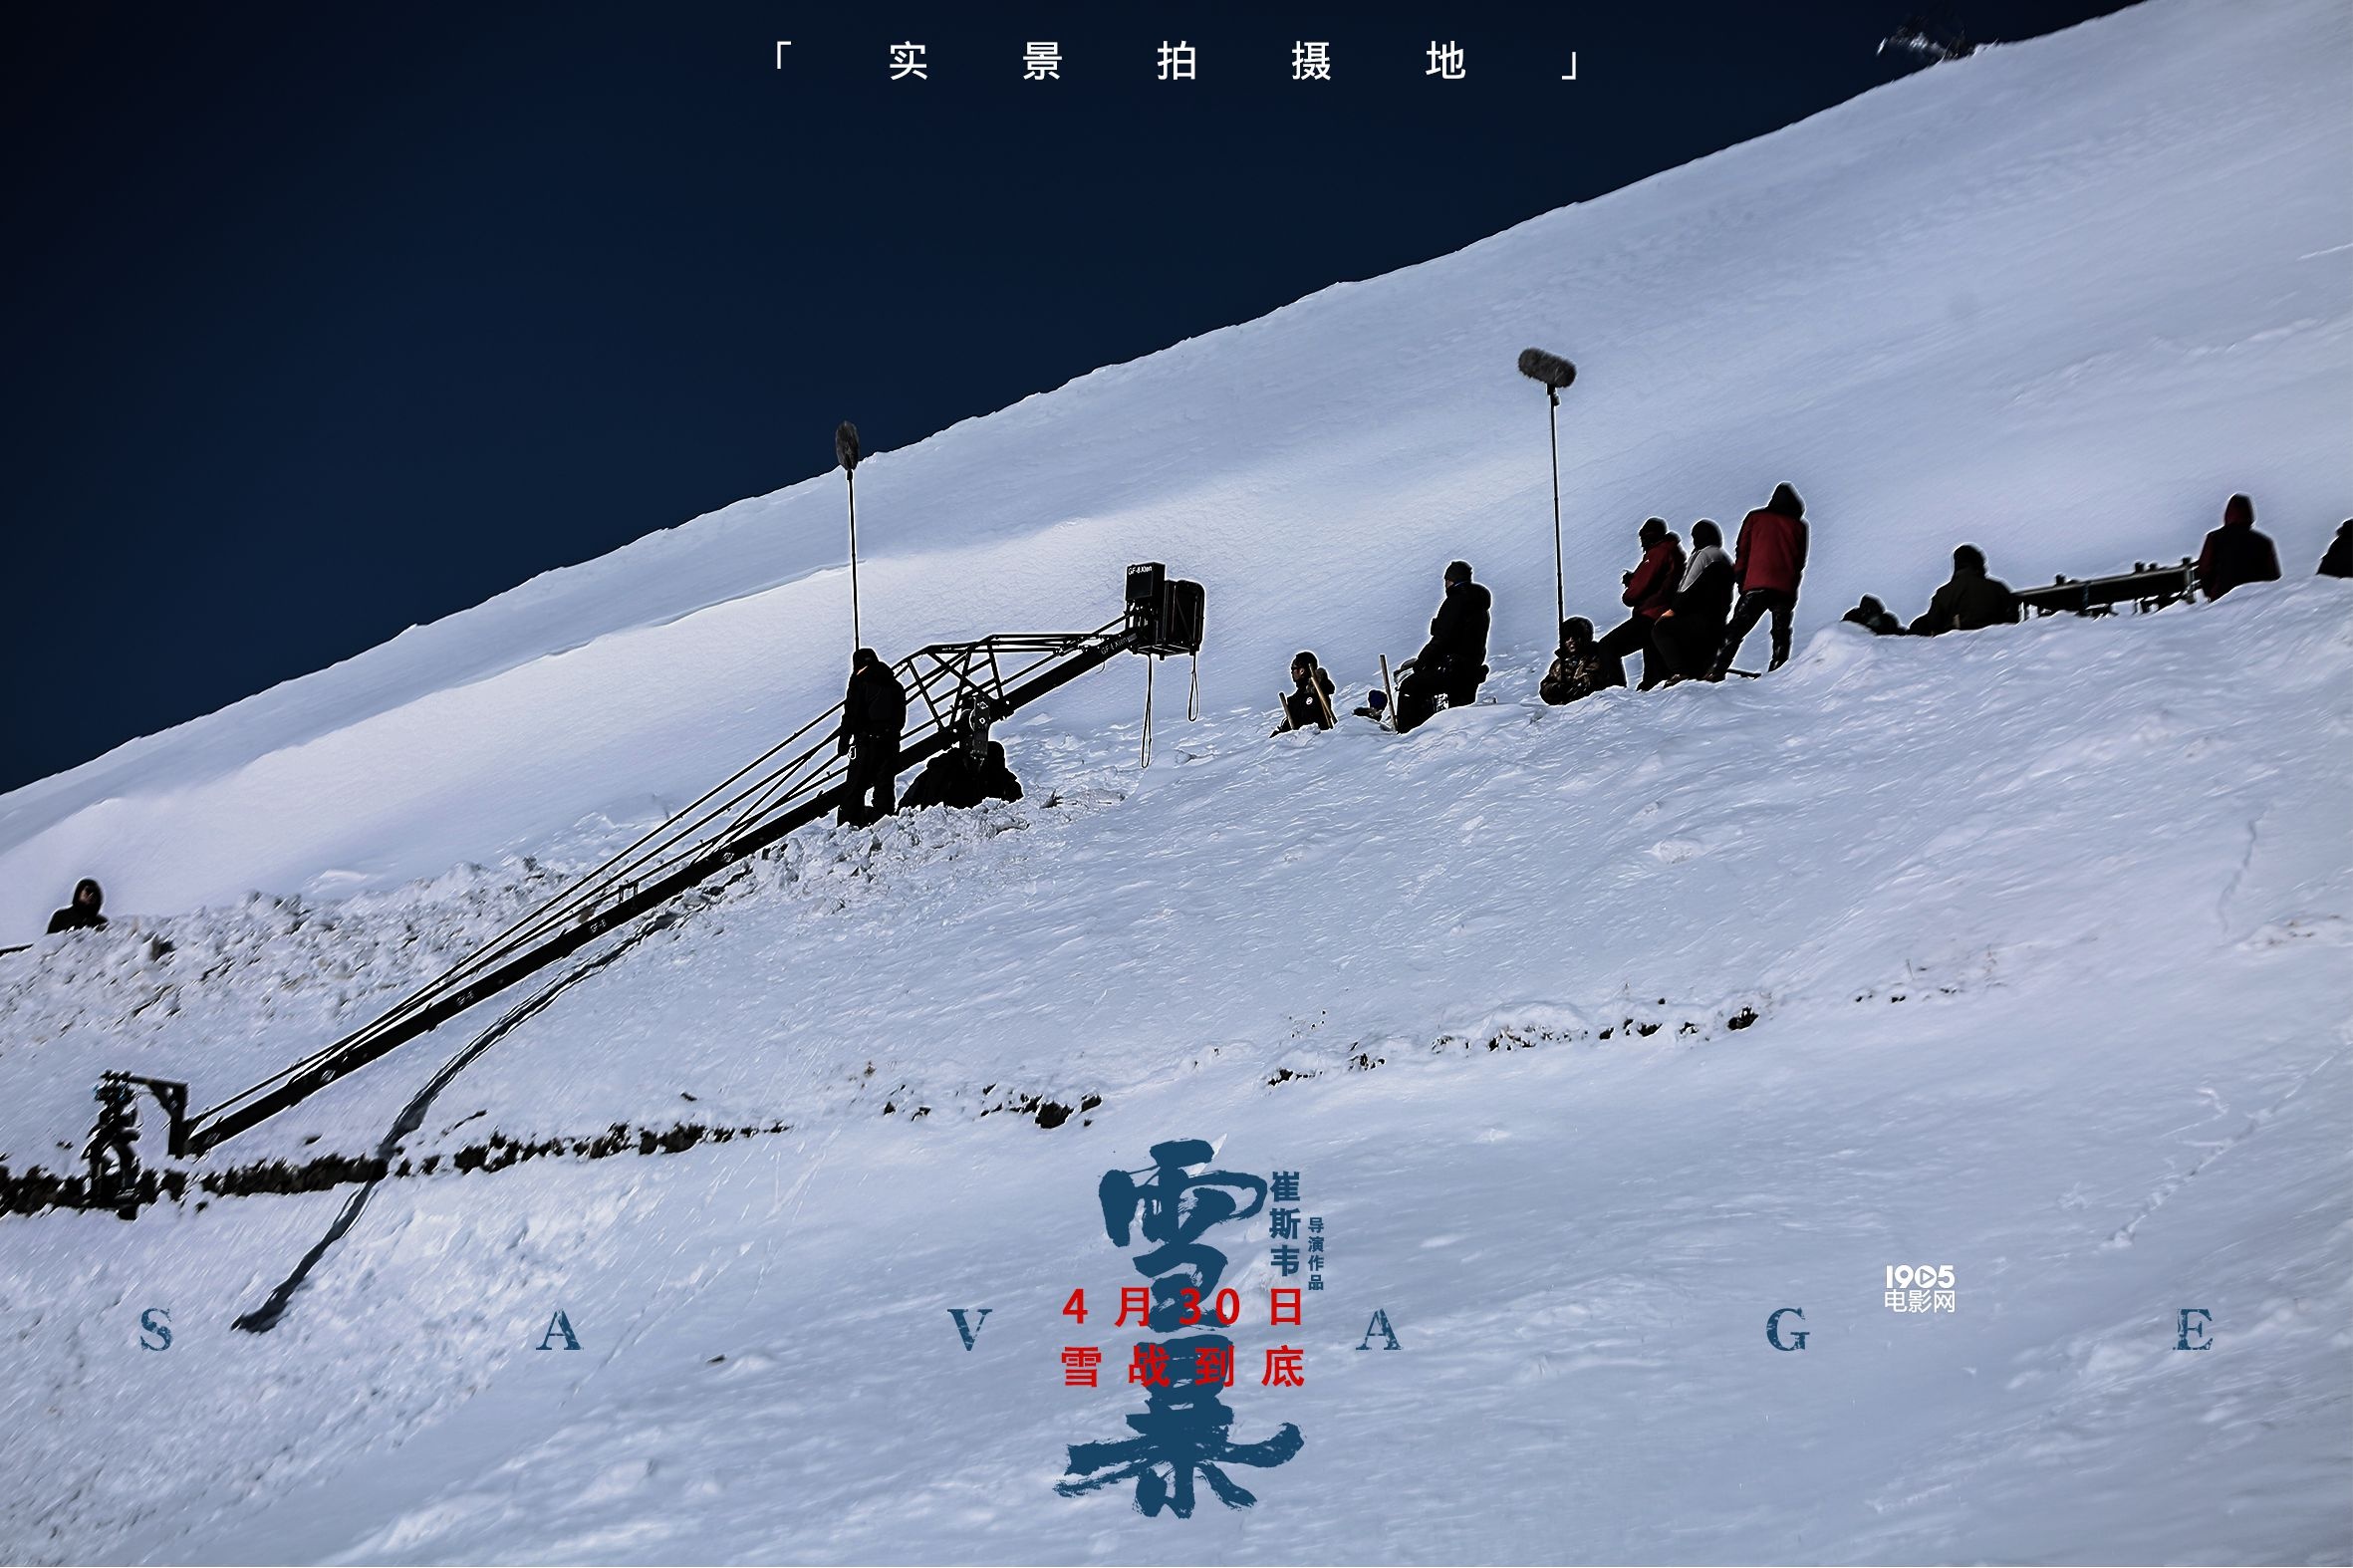 《雪暴》发布“极端环境”特辑 深山雪原实景拍